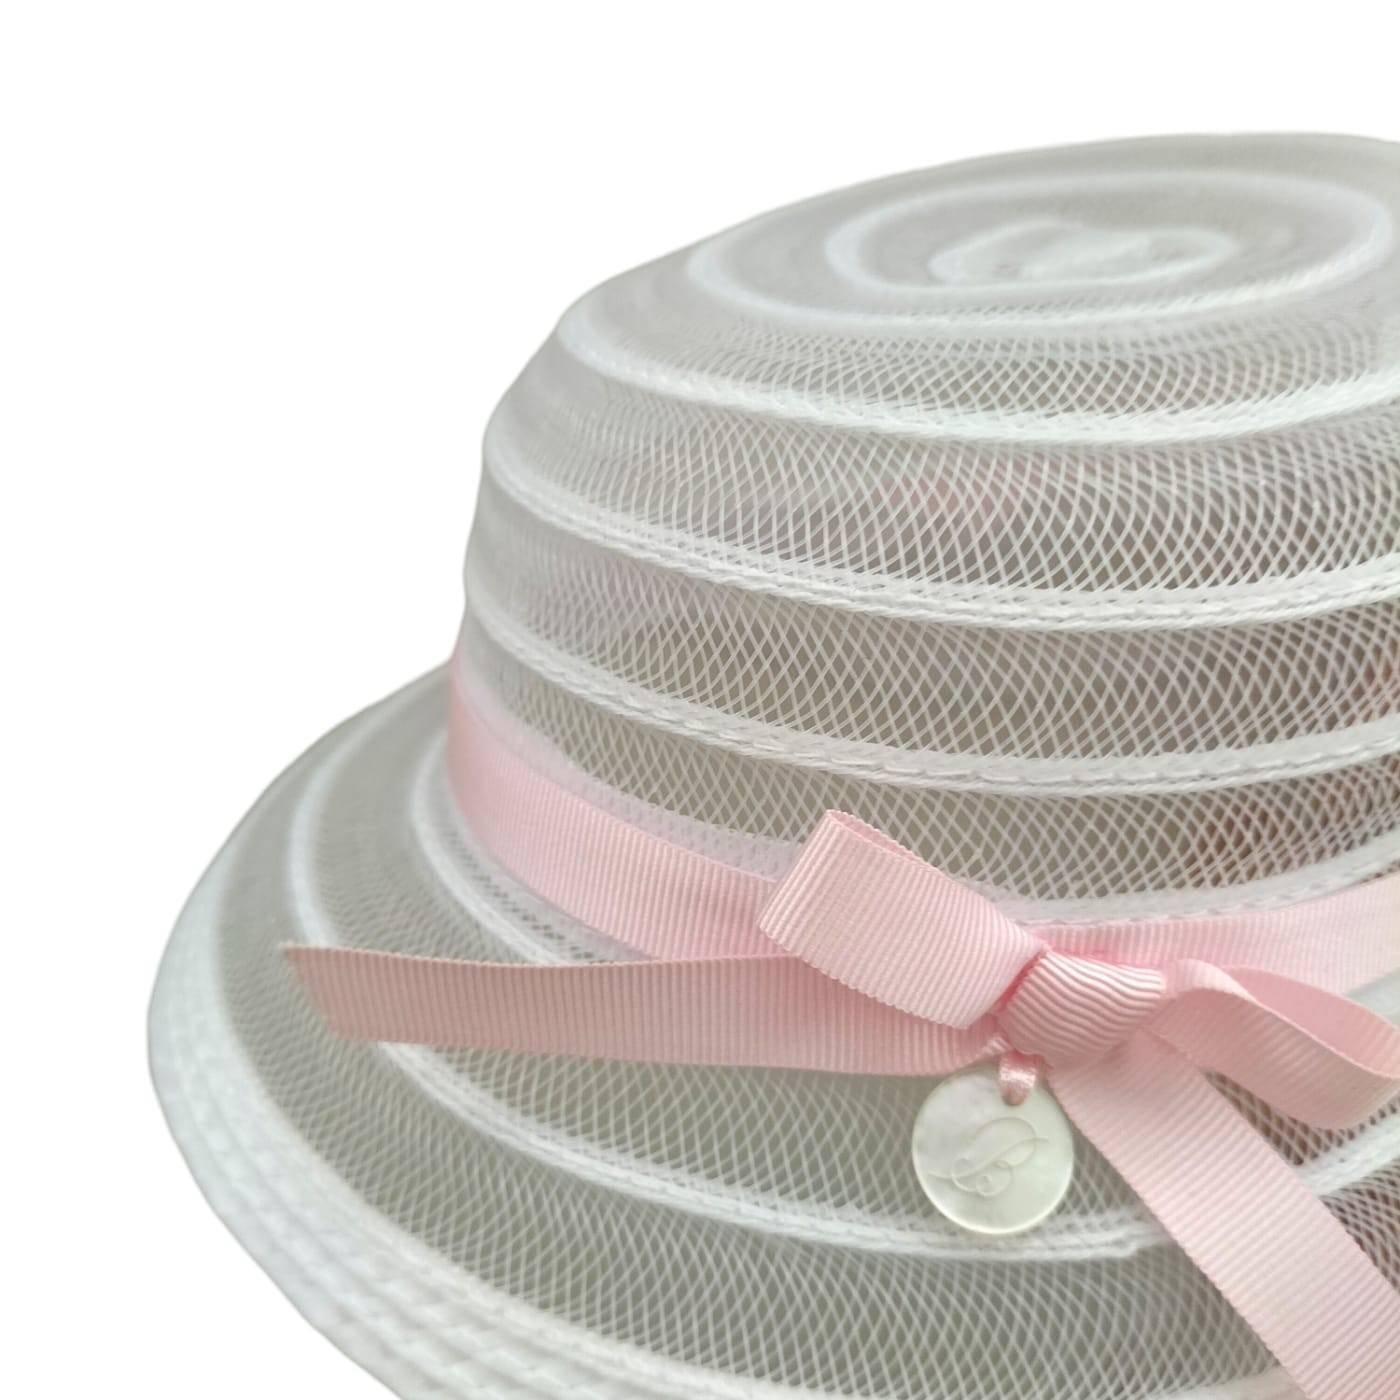 Cappellino bambina neonata effetto paglia bianco e rosa paglietta